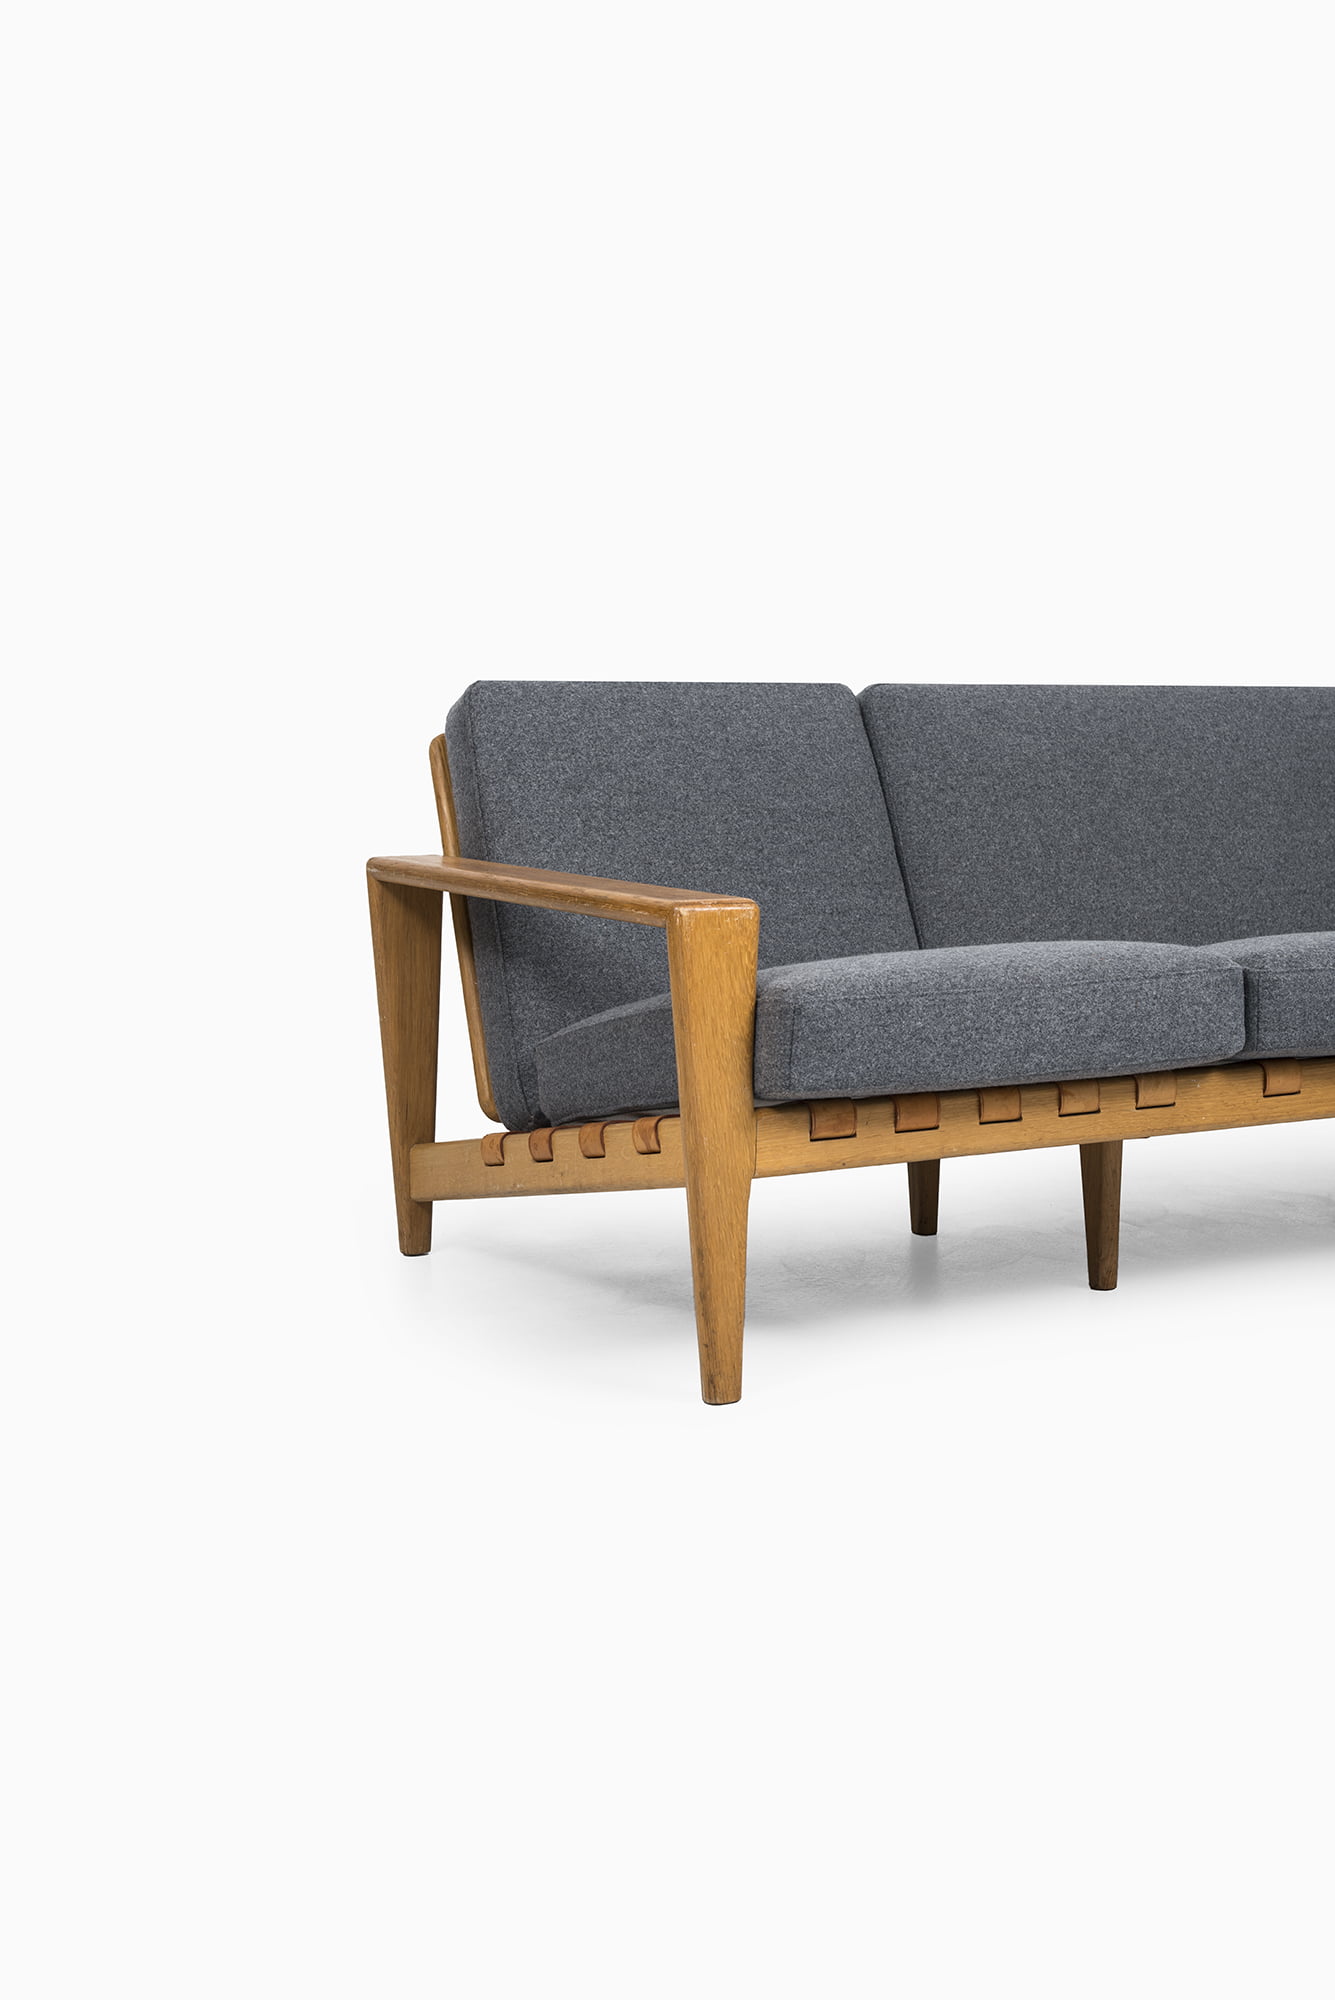 Svante Skogh sofa by Seffle Möbelfabrik at Studio Schalling